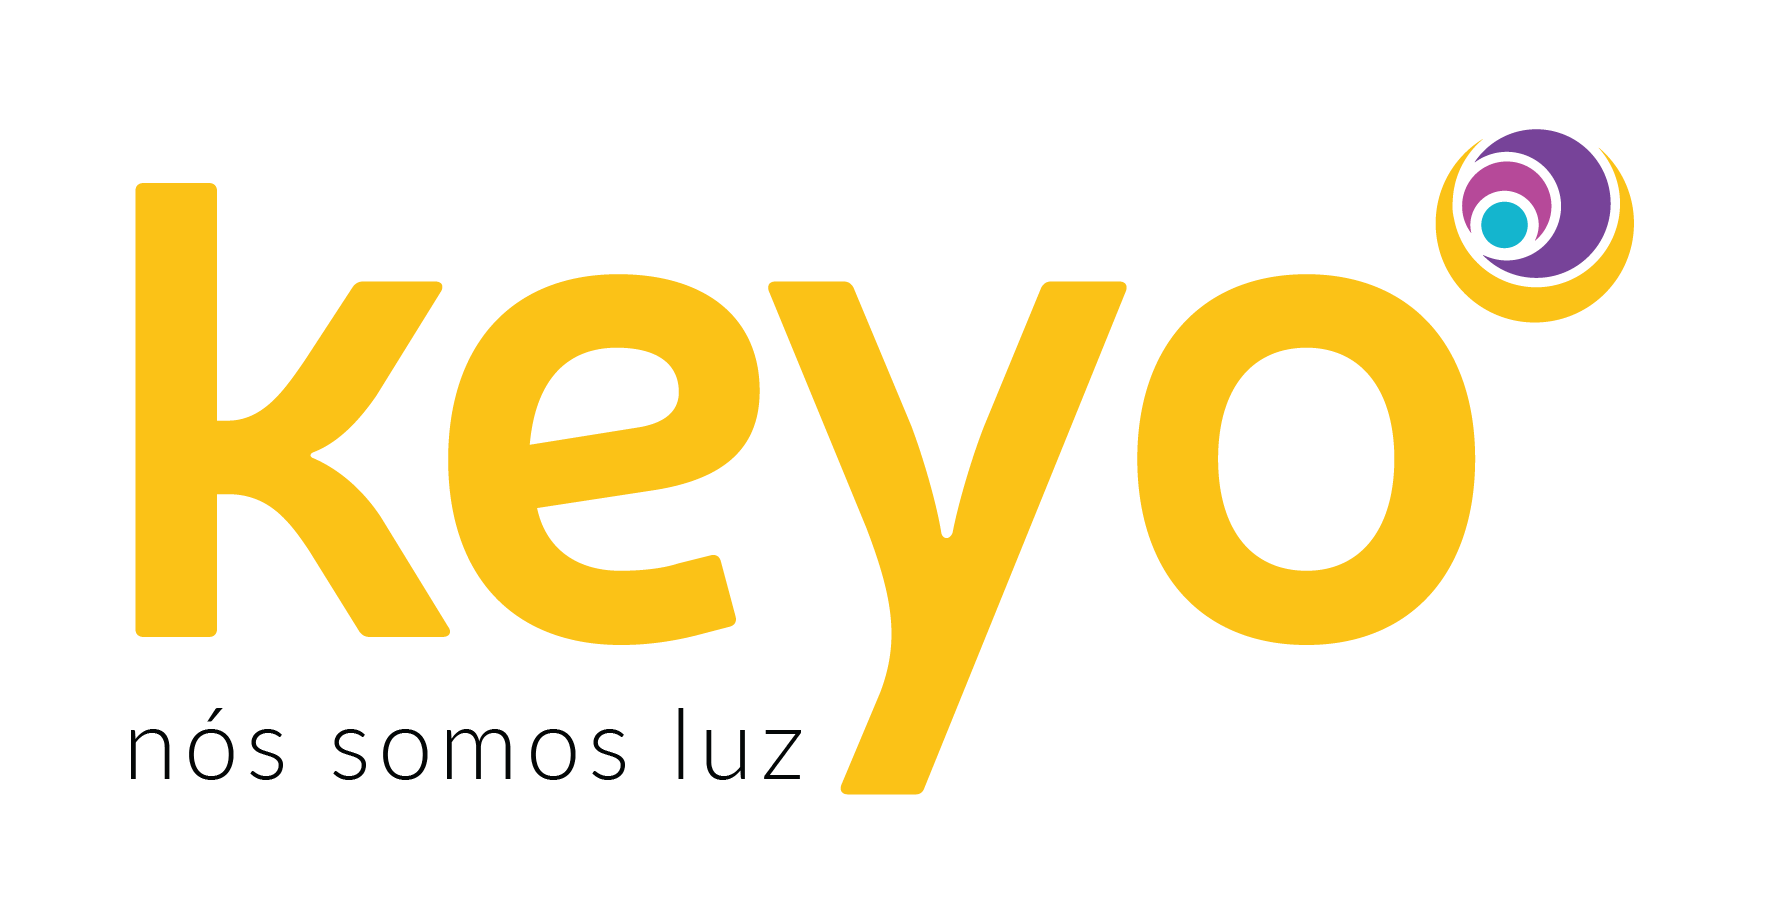 keyo